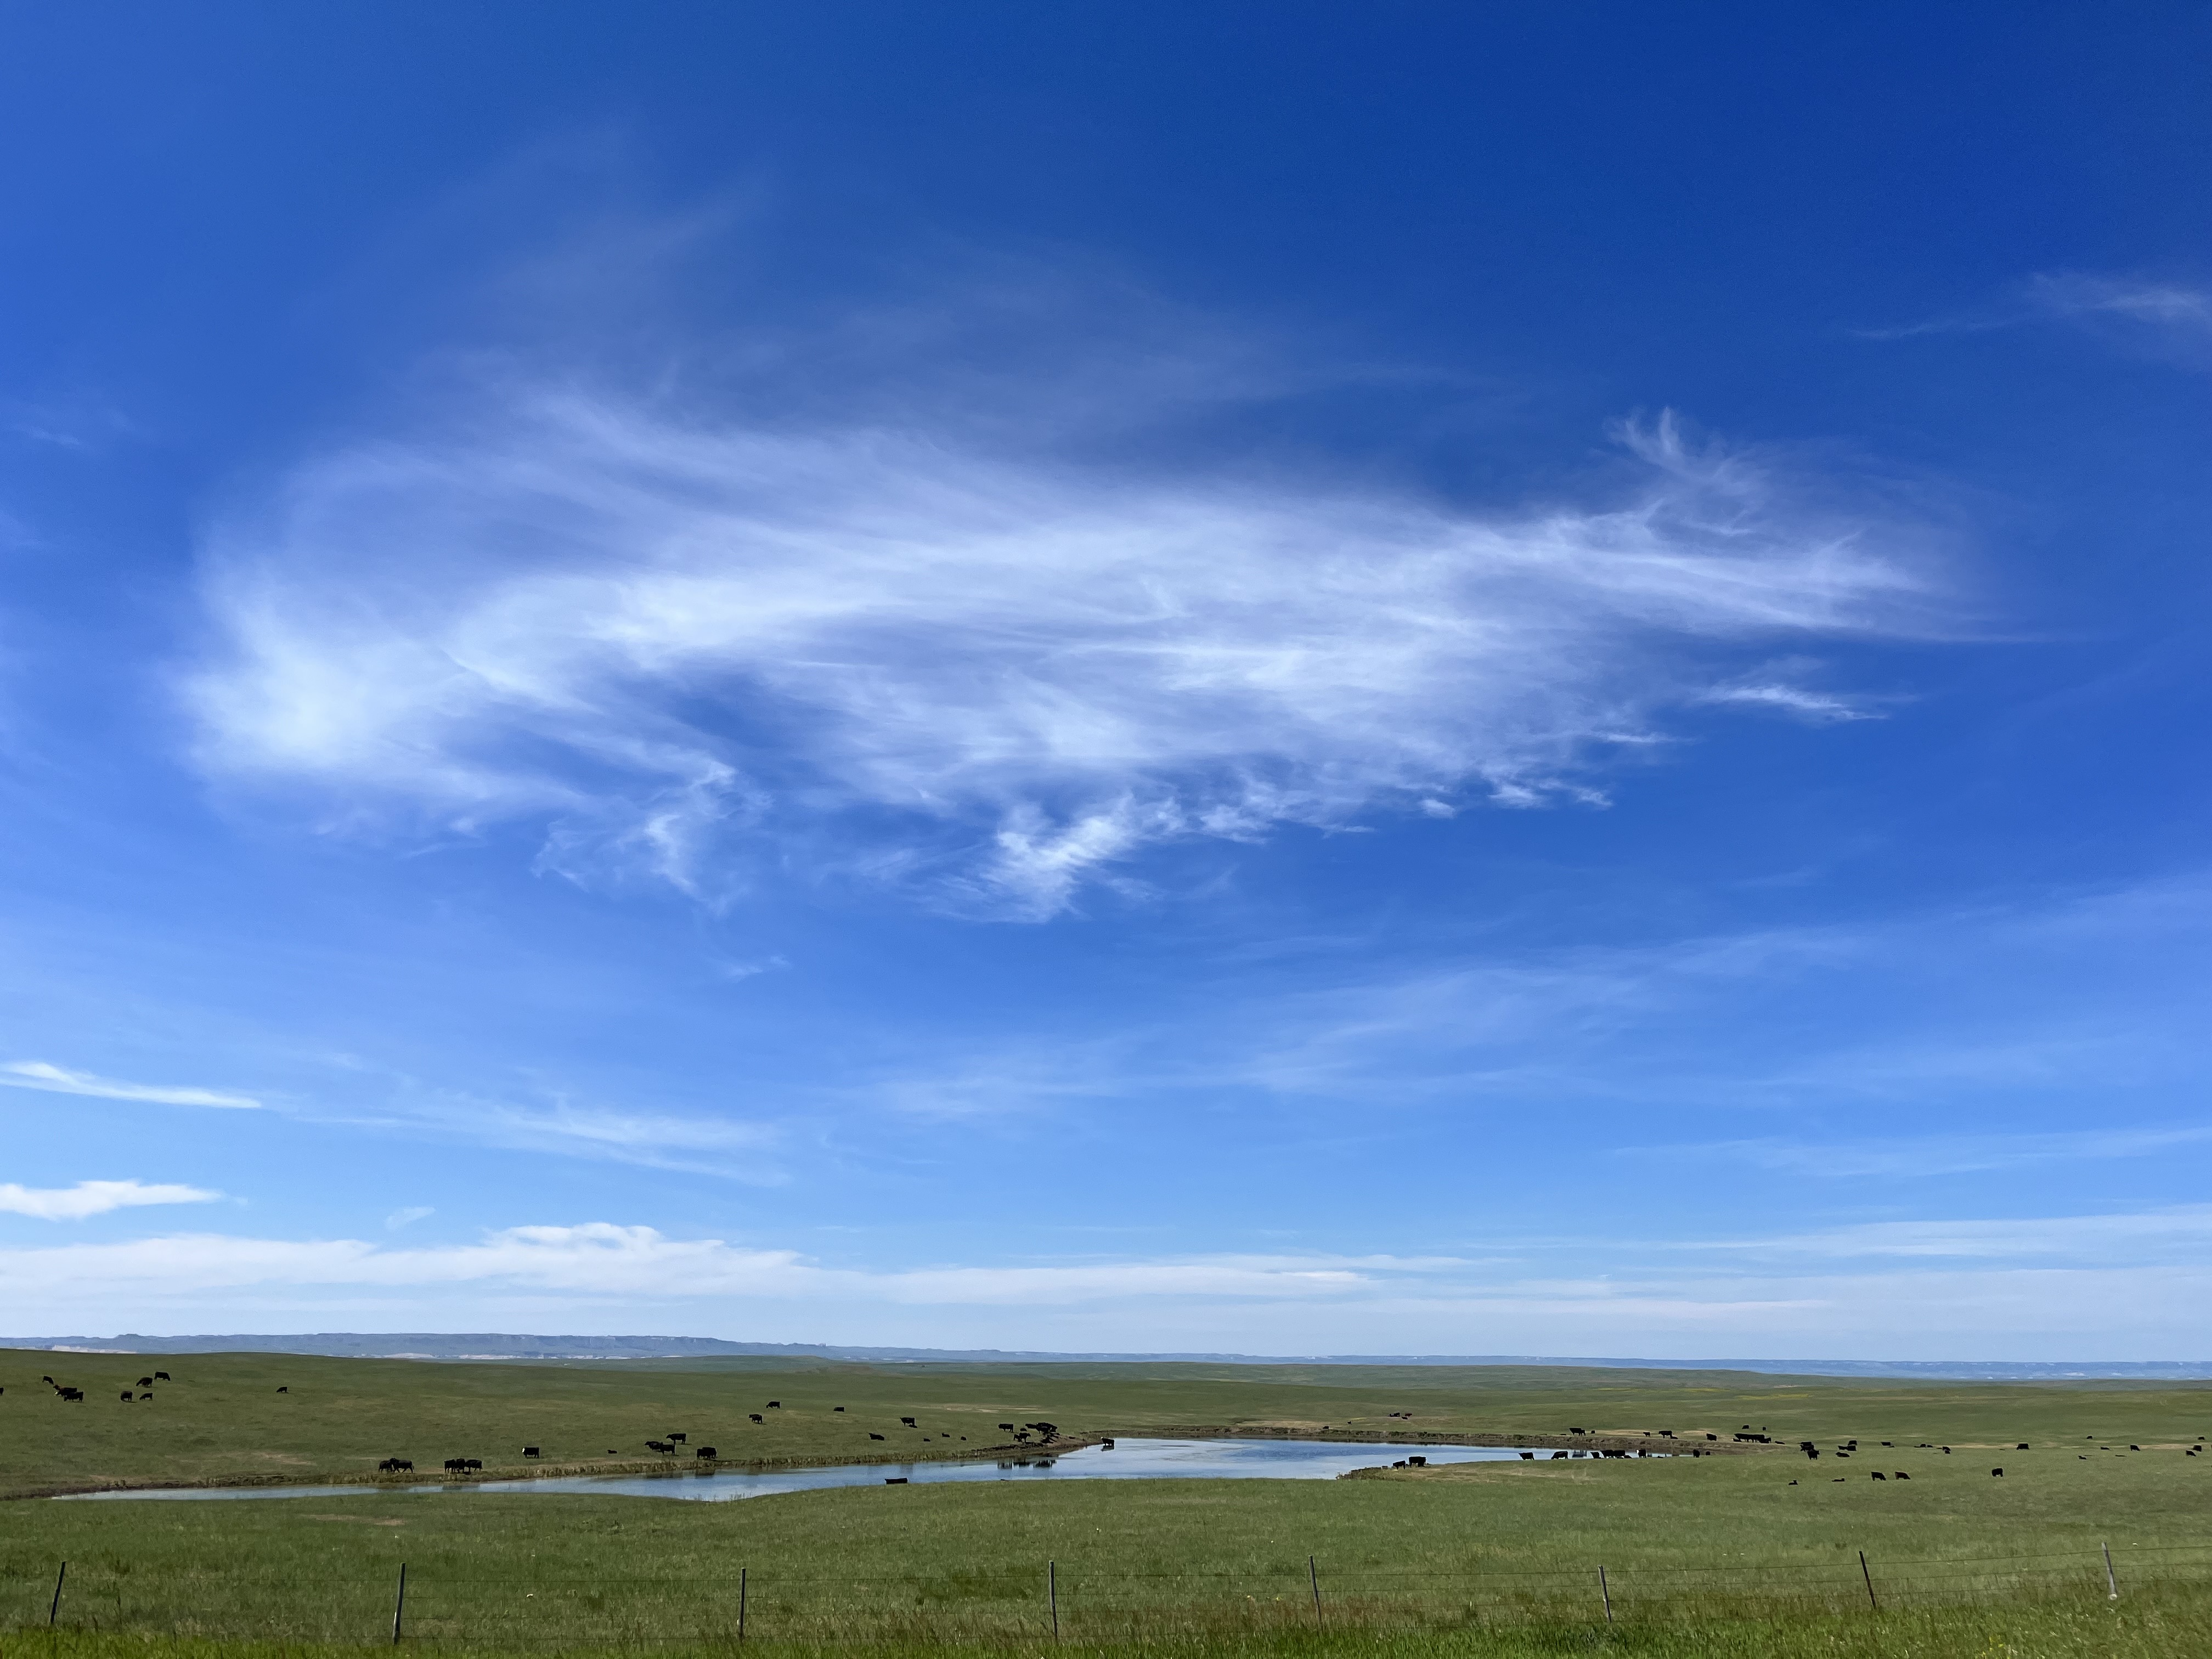 Nebraska cattle near pond on grassland